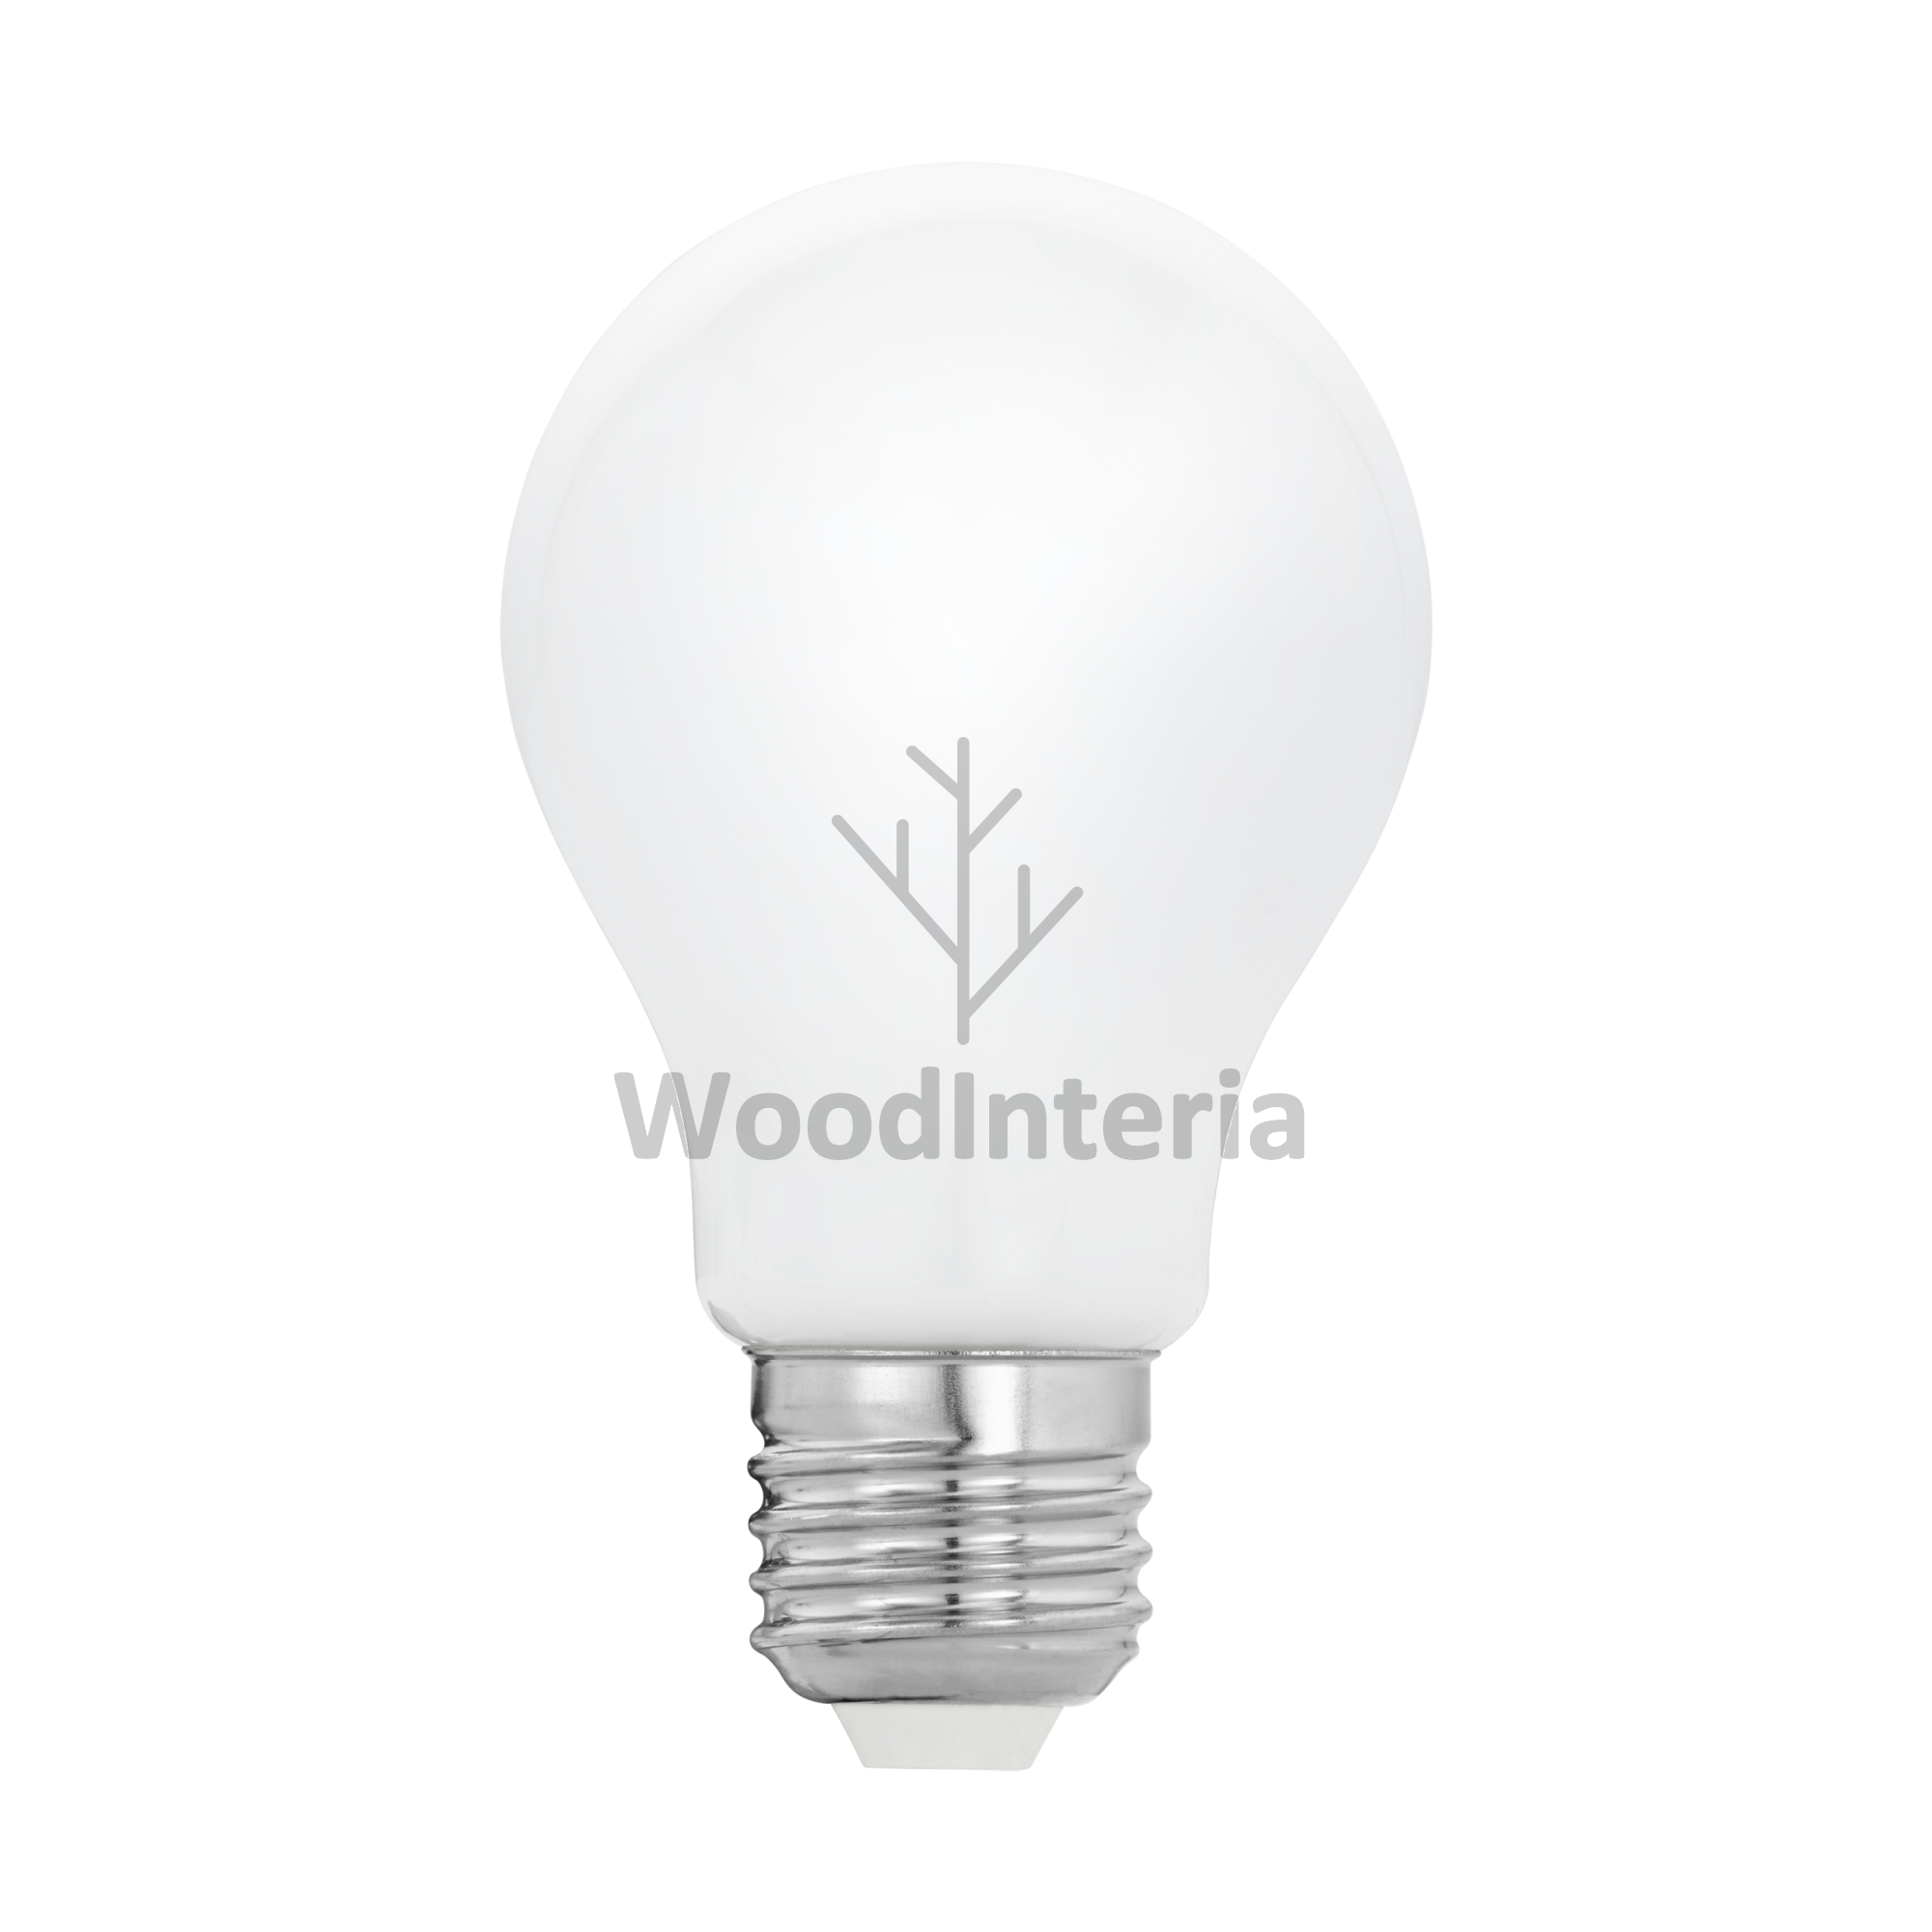 фото лампочка white bulb #1 led в скандинавском интерьере лофт эко | WoodInteria